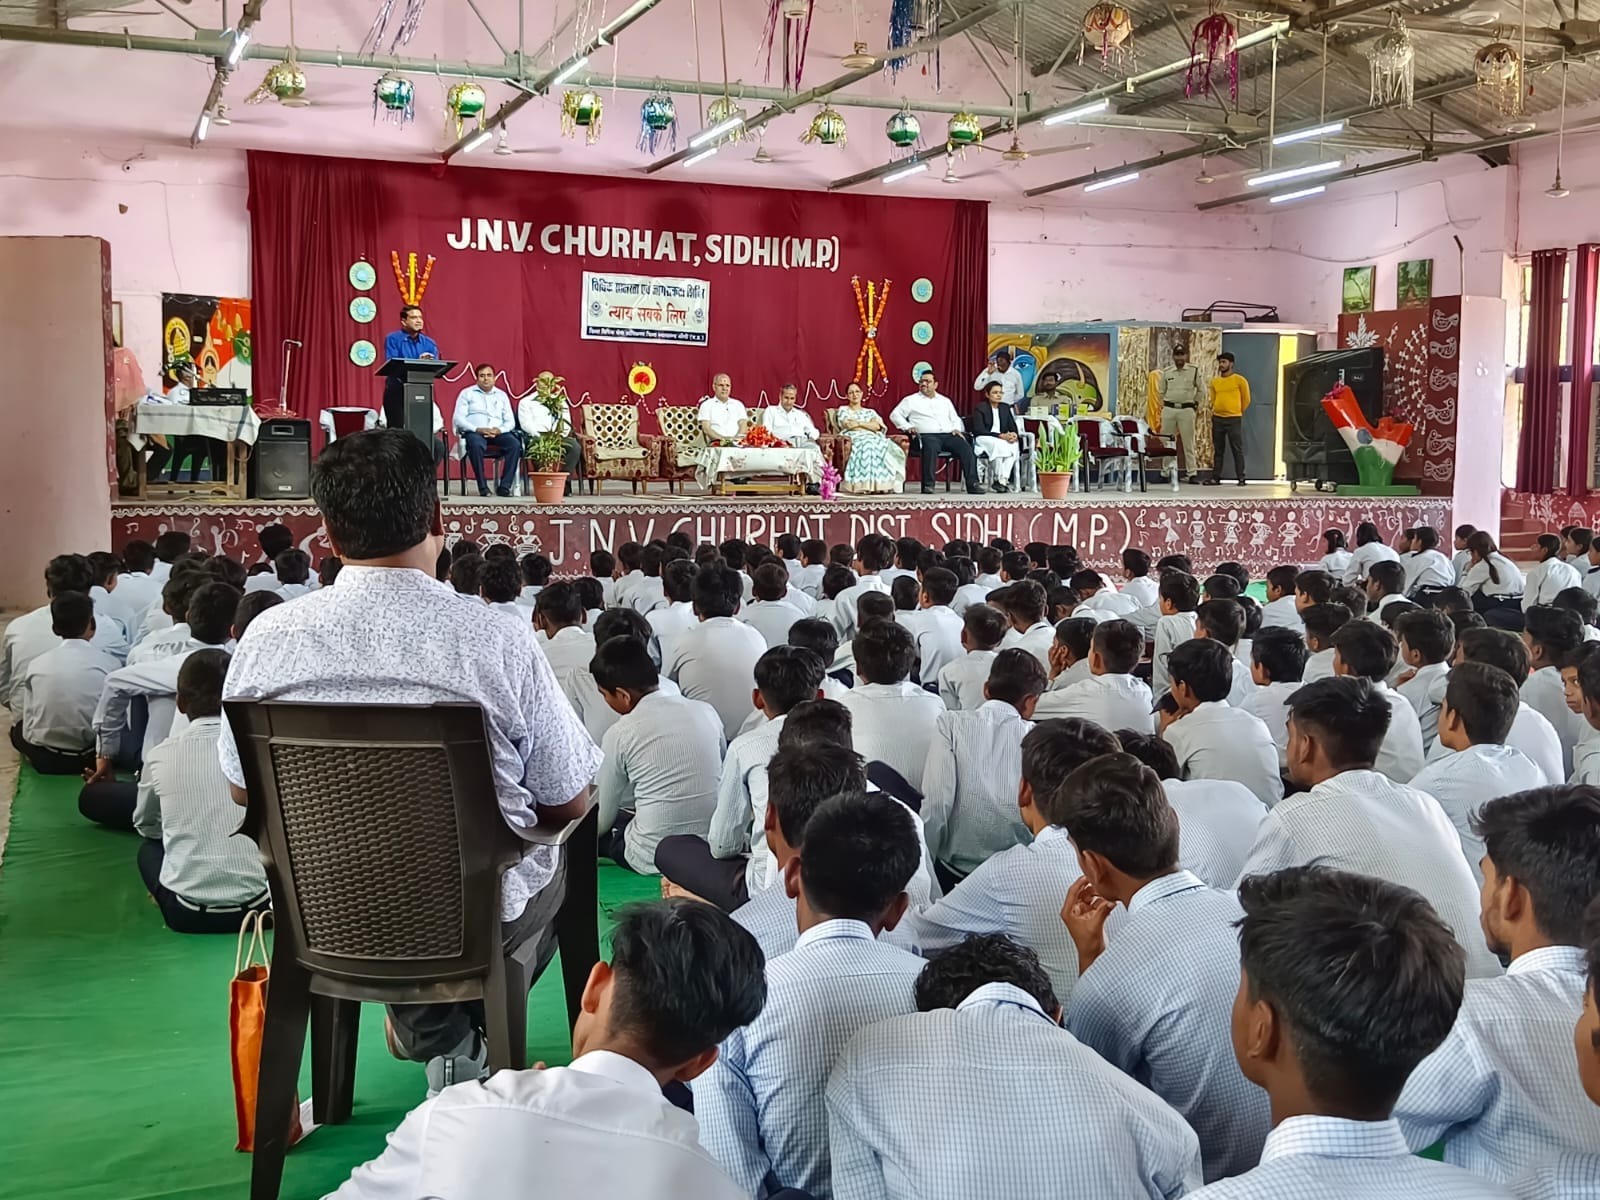 Sidhi News: नवोदय विद्यालय चुरहट में विधिक जागरूकता एवं साक्षरता शिविर आयोजित